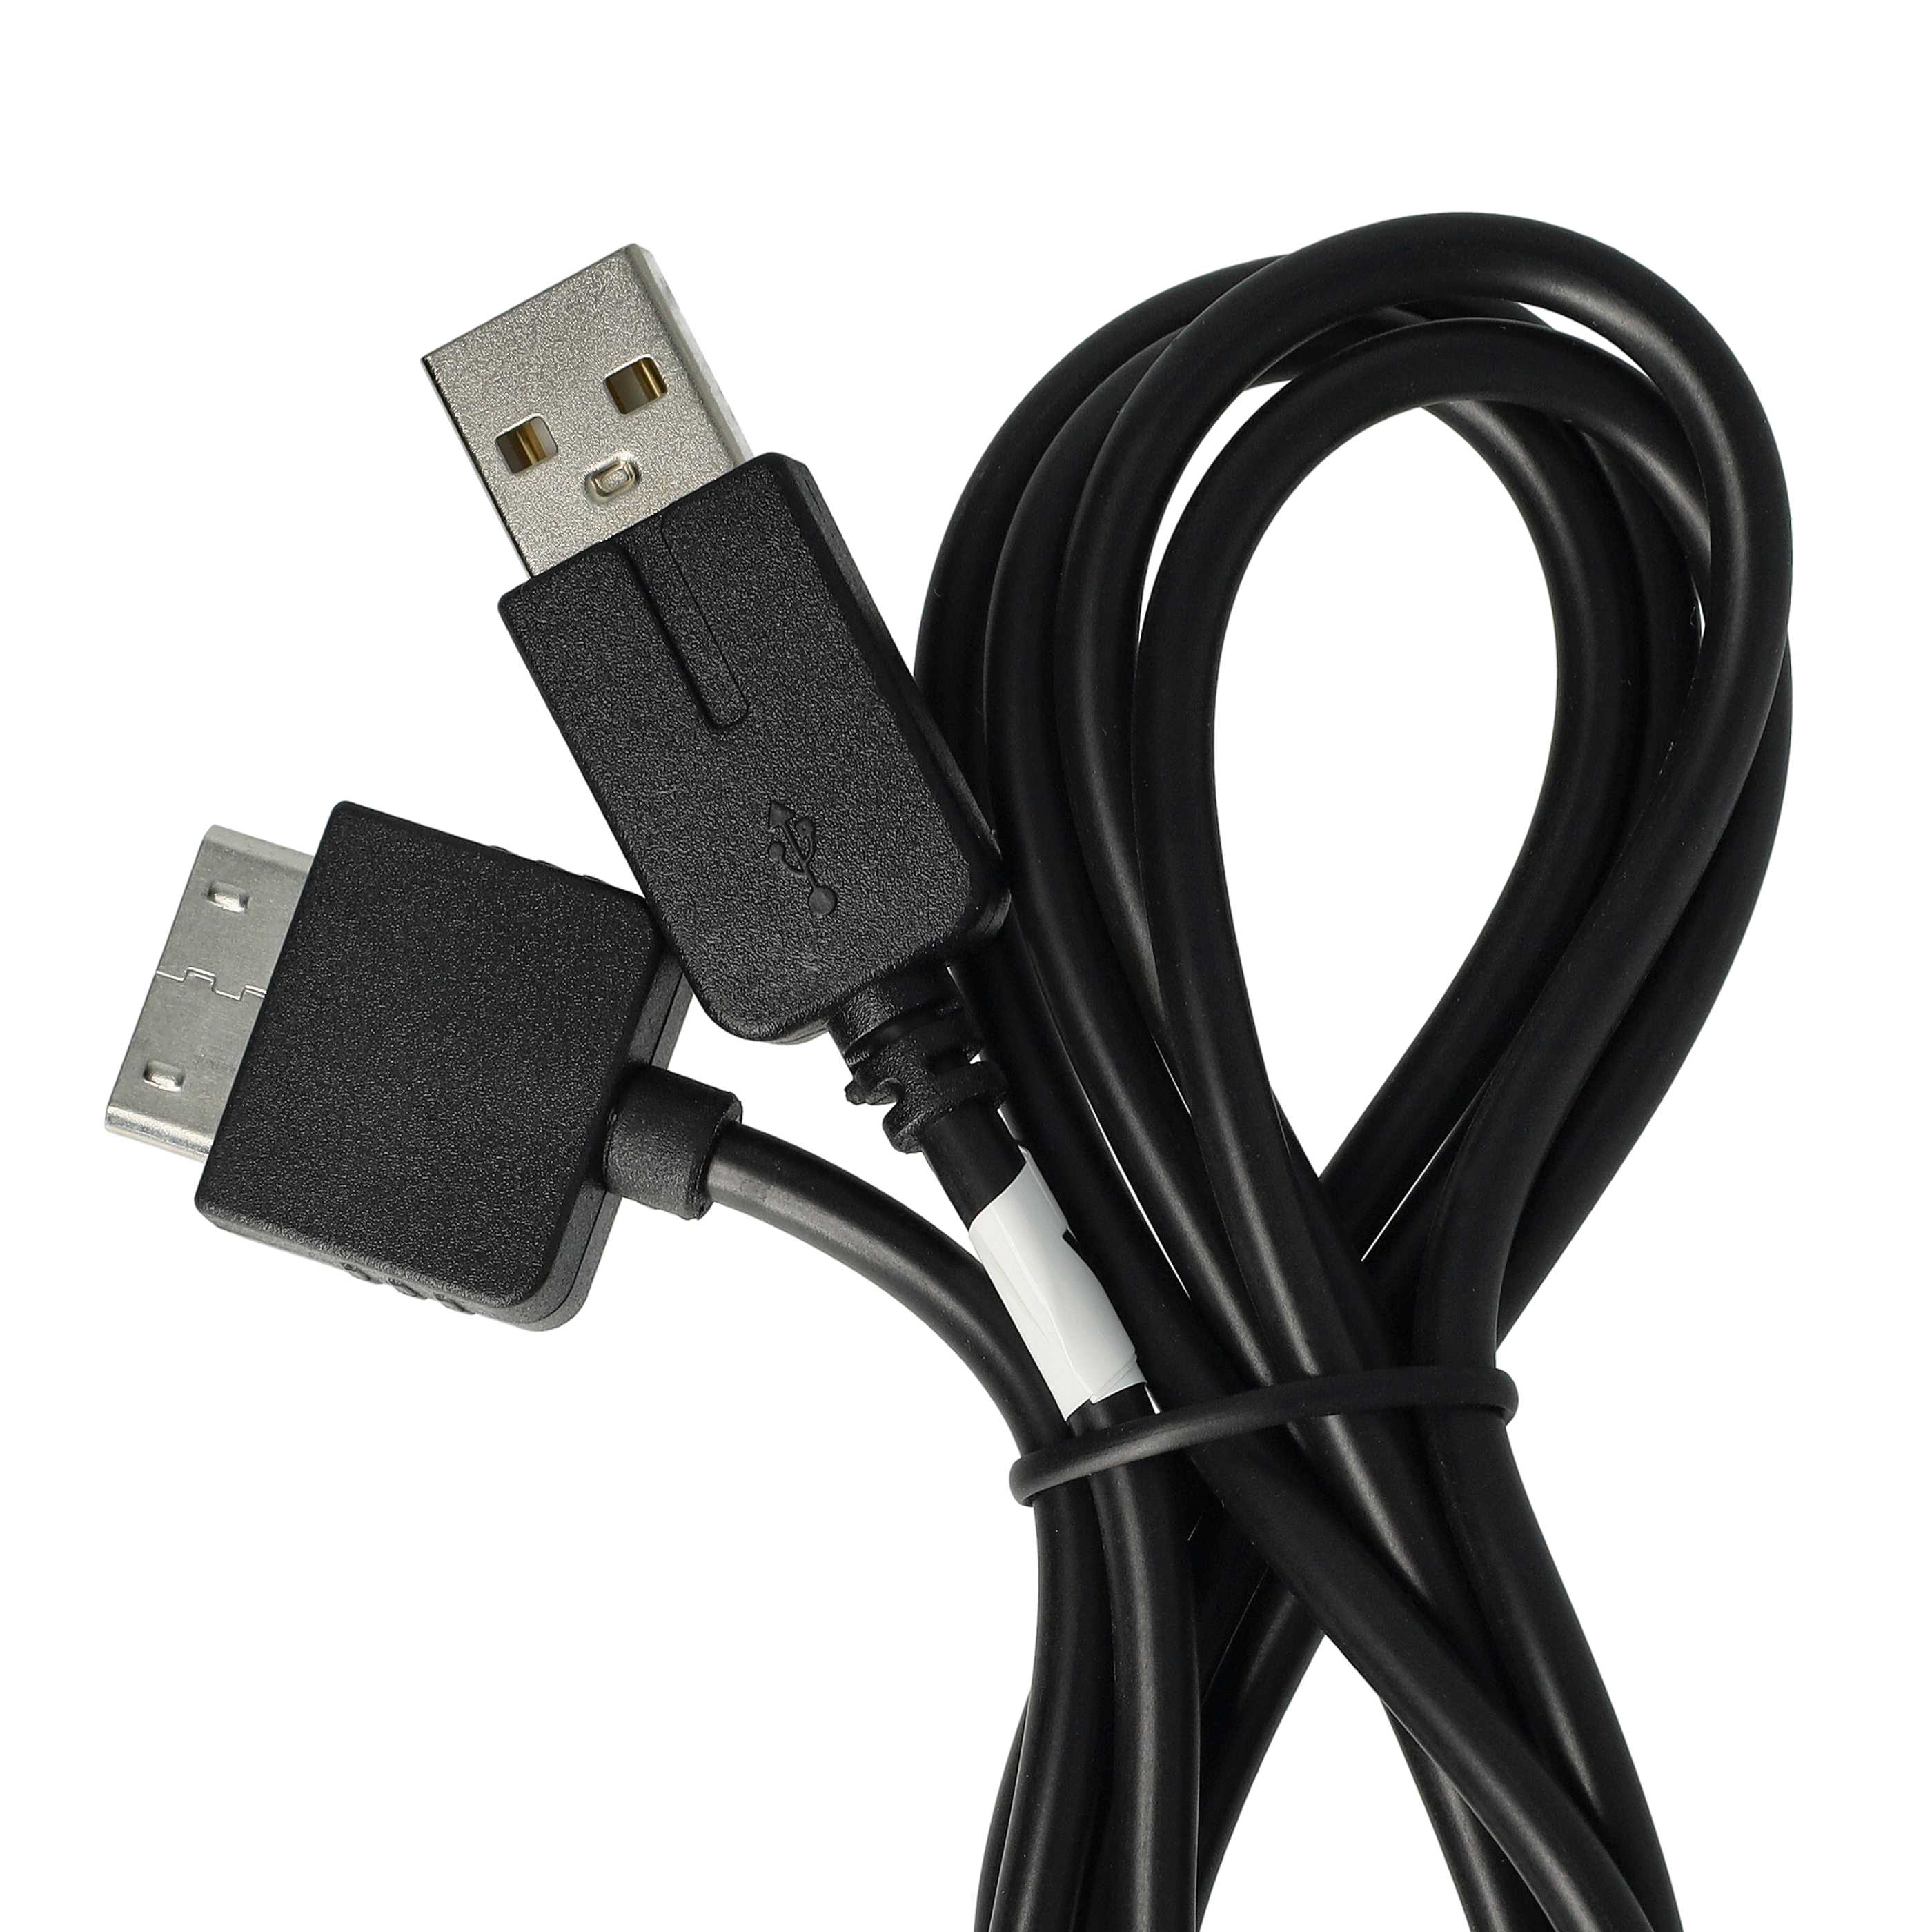 vhbw Câble USB console - câble de données 2 en 1 / chargement 1,2m de long